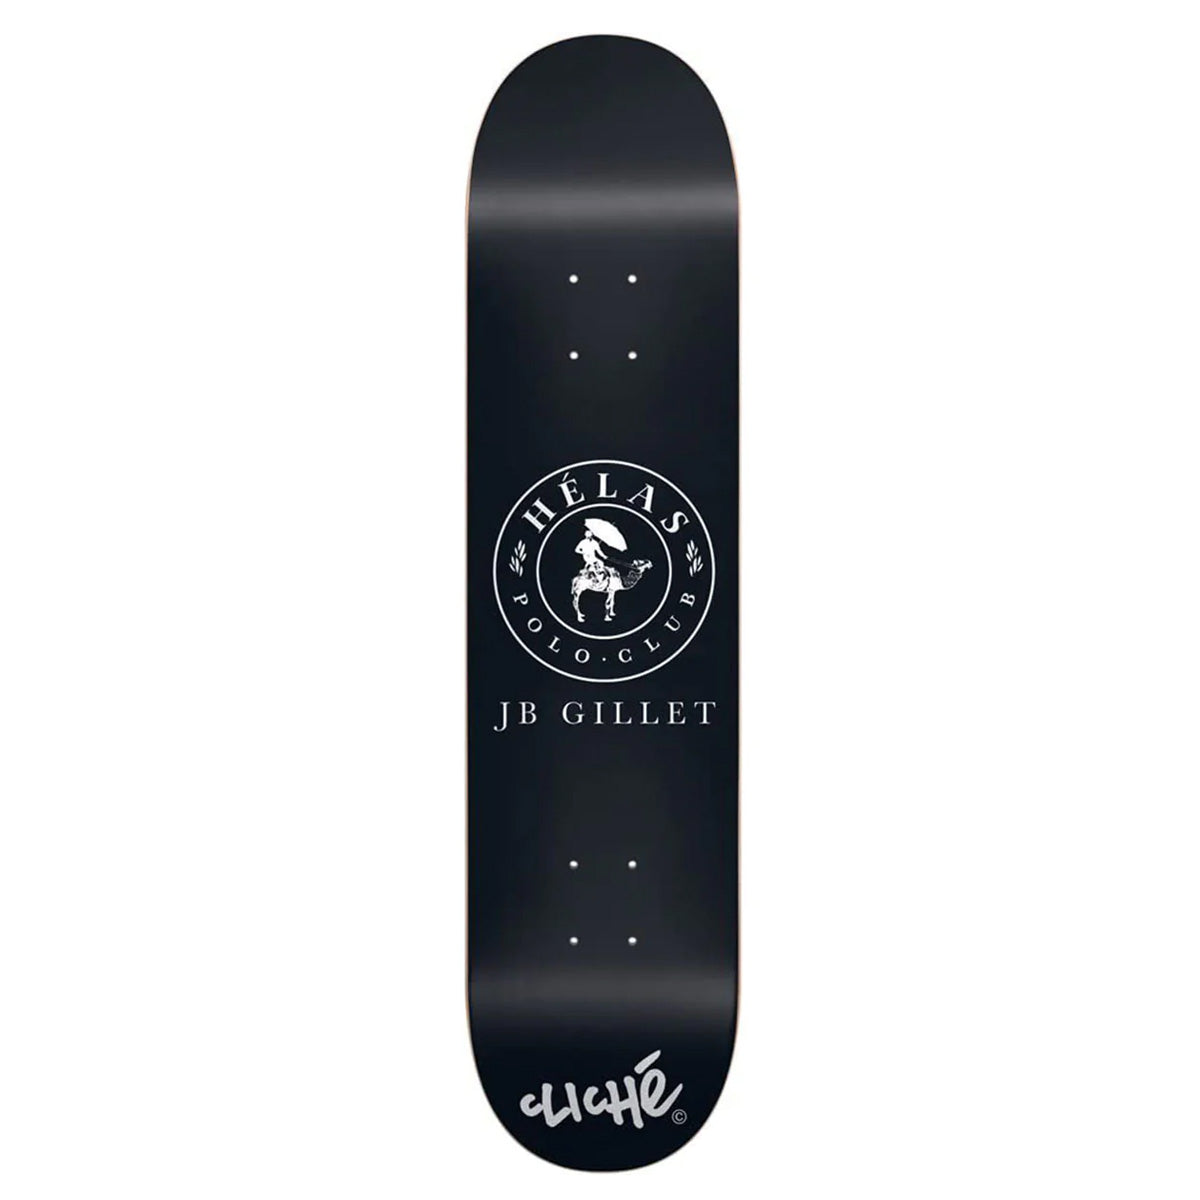 Cliche Helas Series JB Gillet 8.0 Skateboard Decks